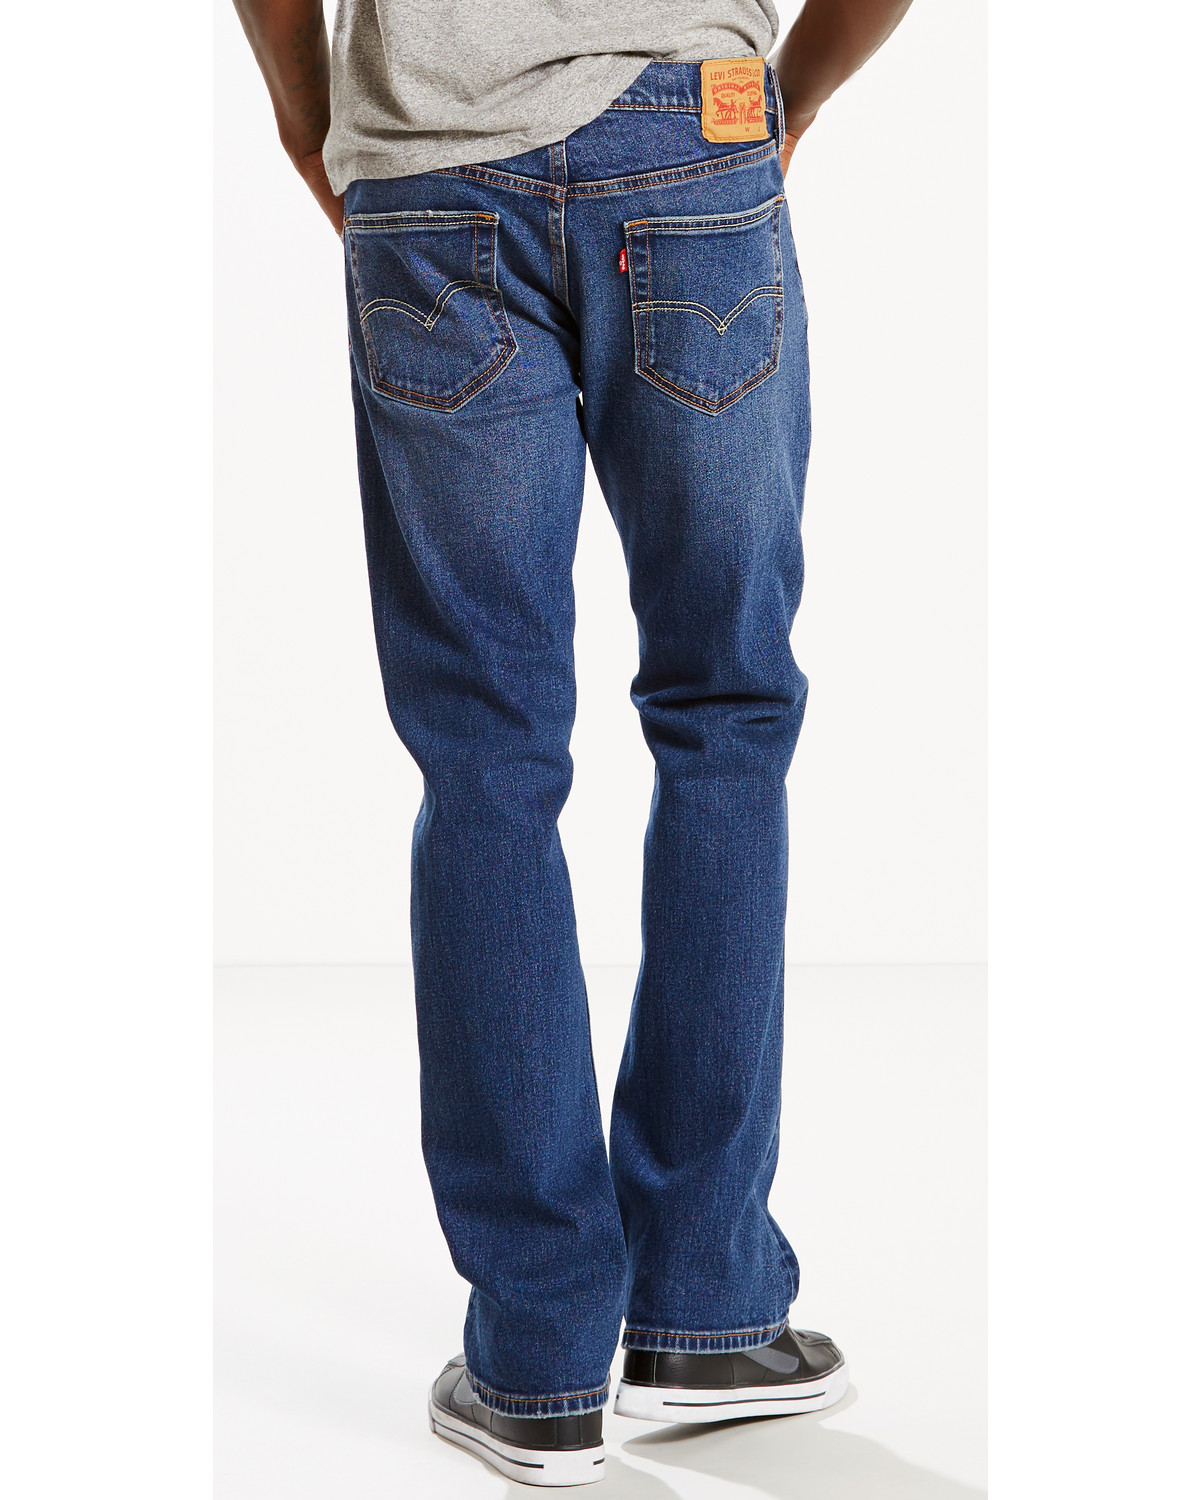 jeans 527 levis